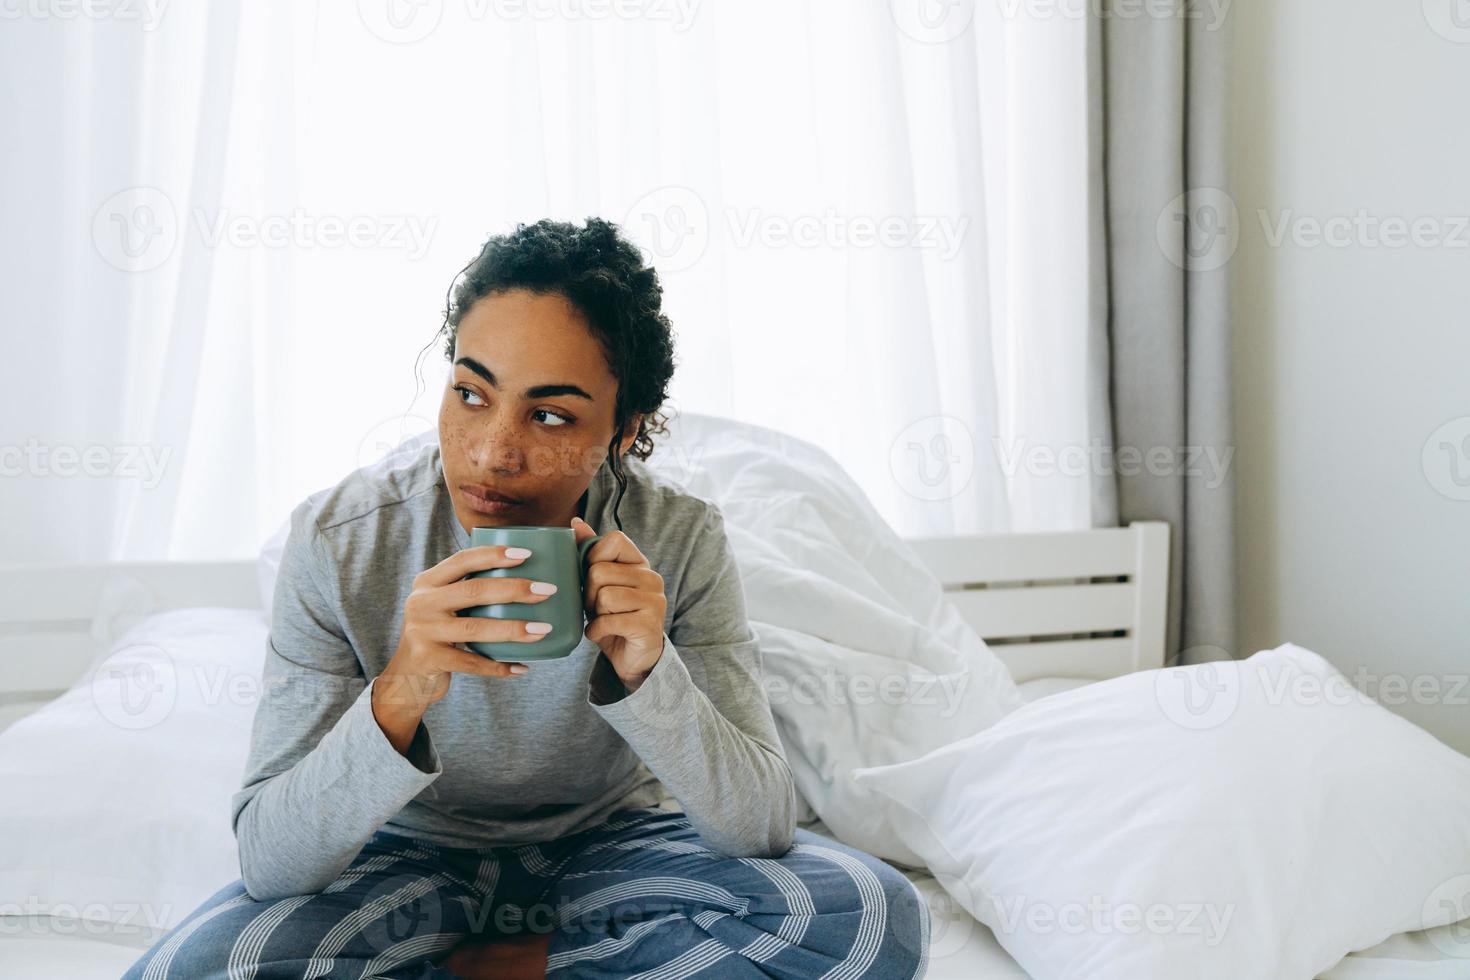 geconcentreerde Afrikaanse vrouw die koffie drinkt en naar de zijkant kijkt foto